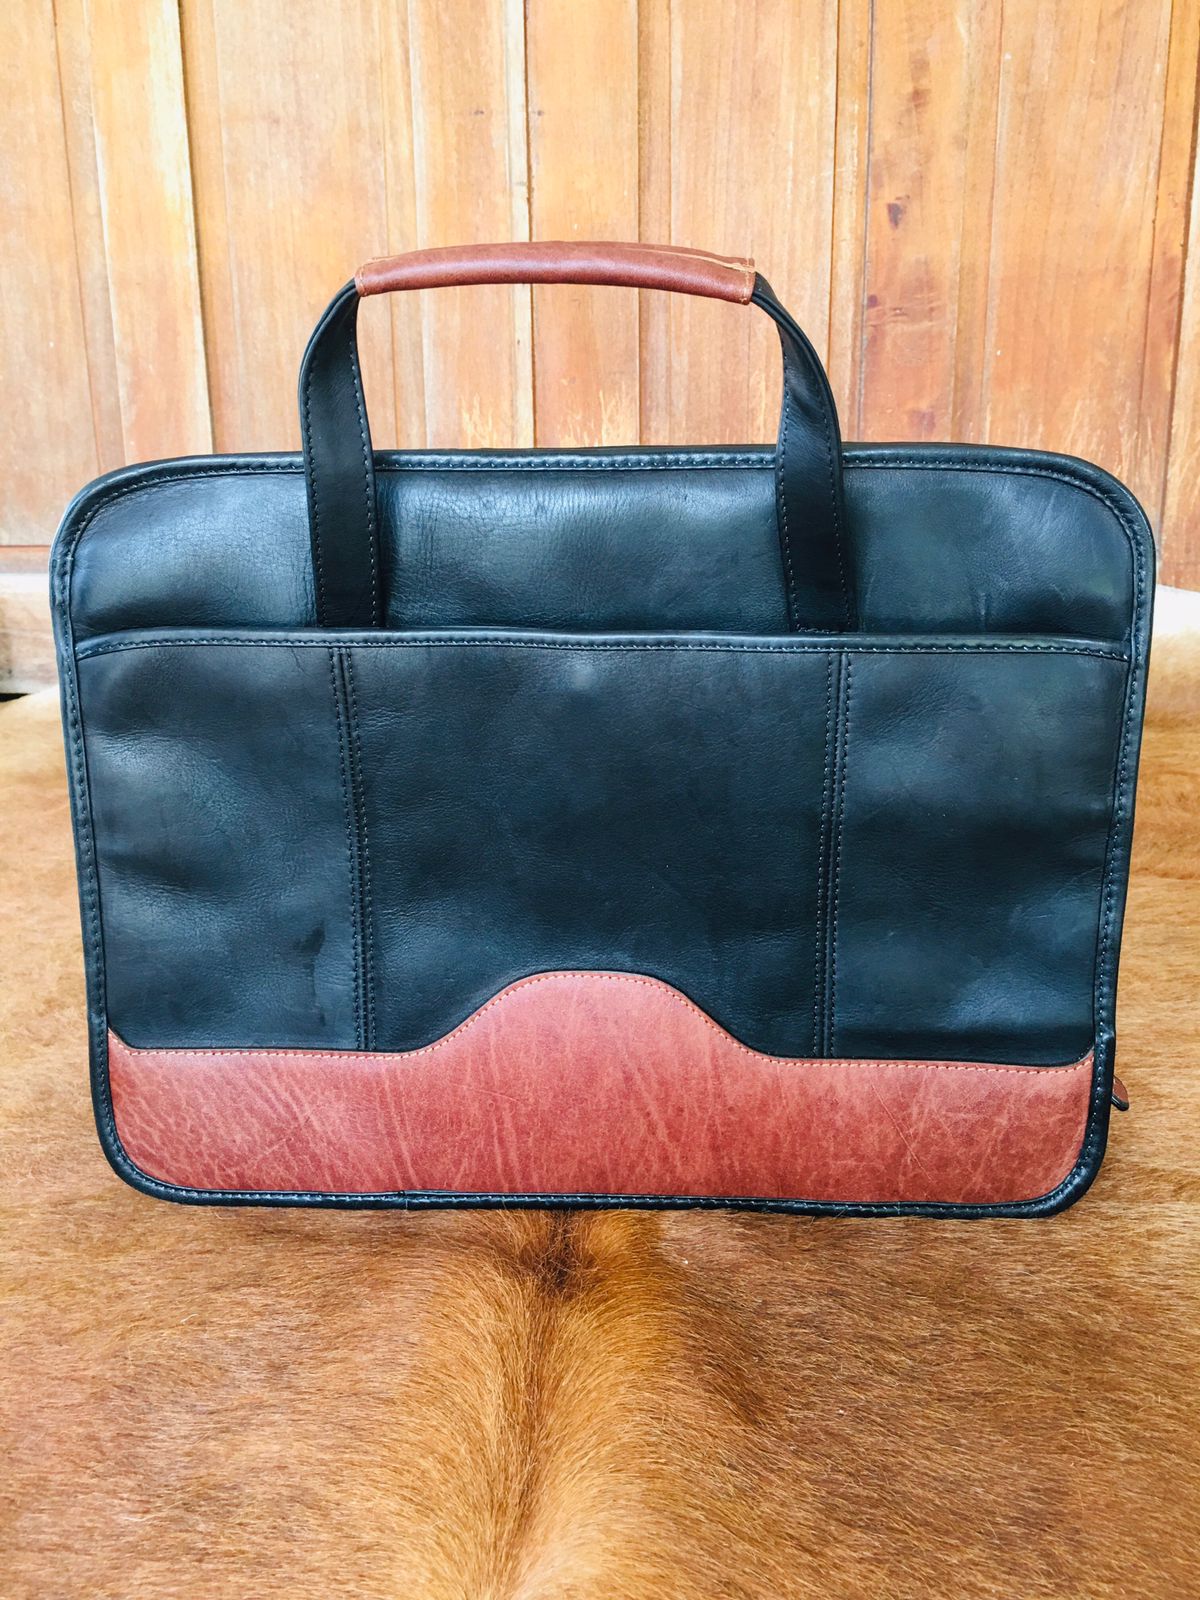 Santa Fe Collection: Slim Brief Bag